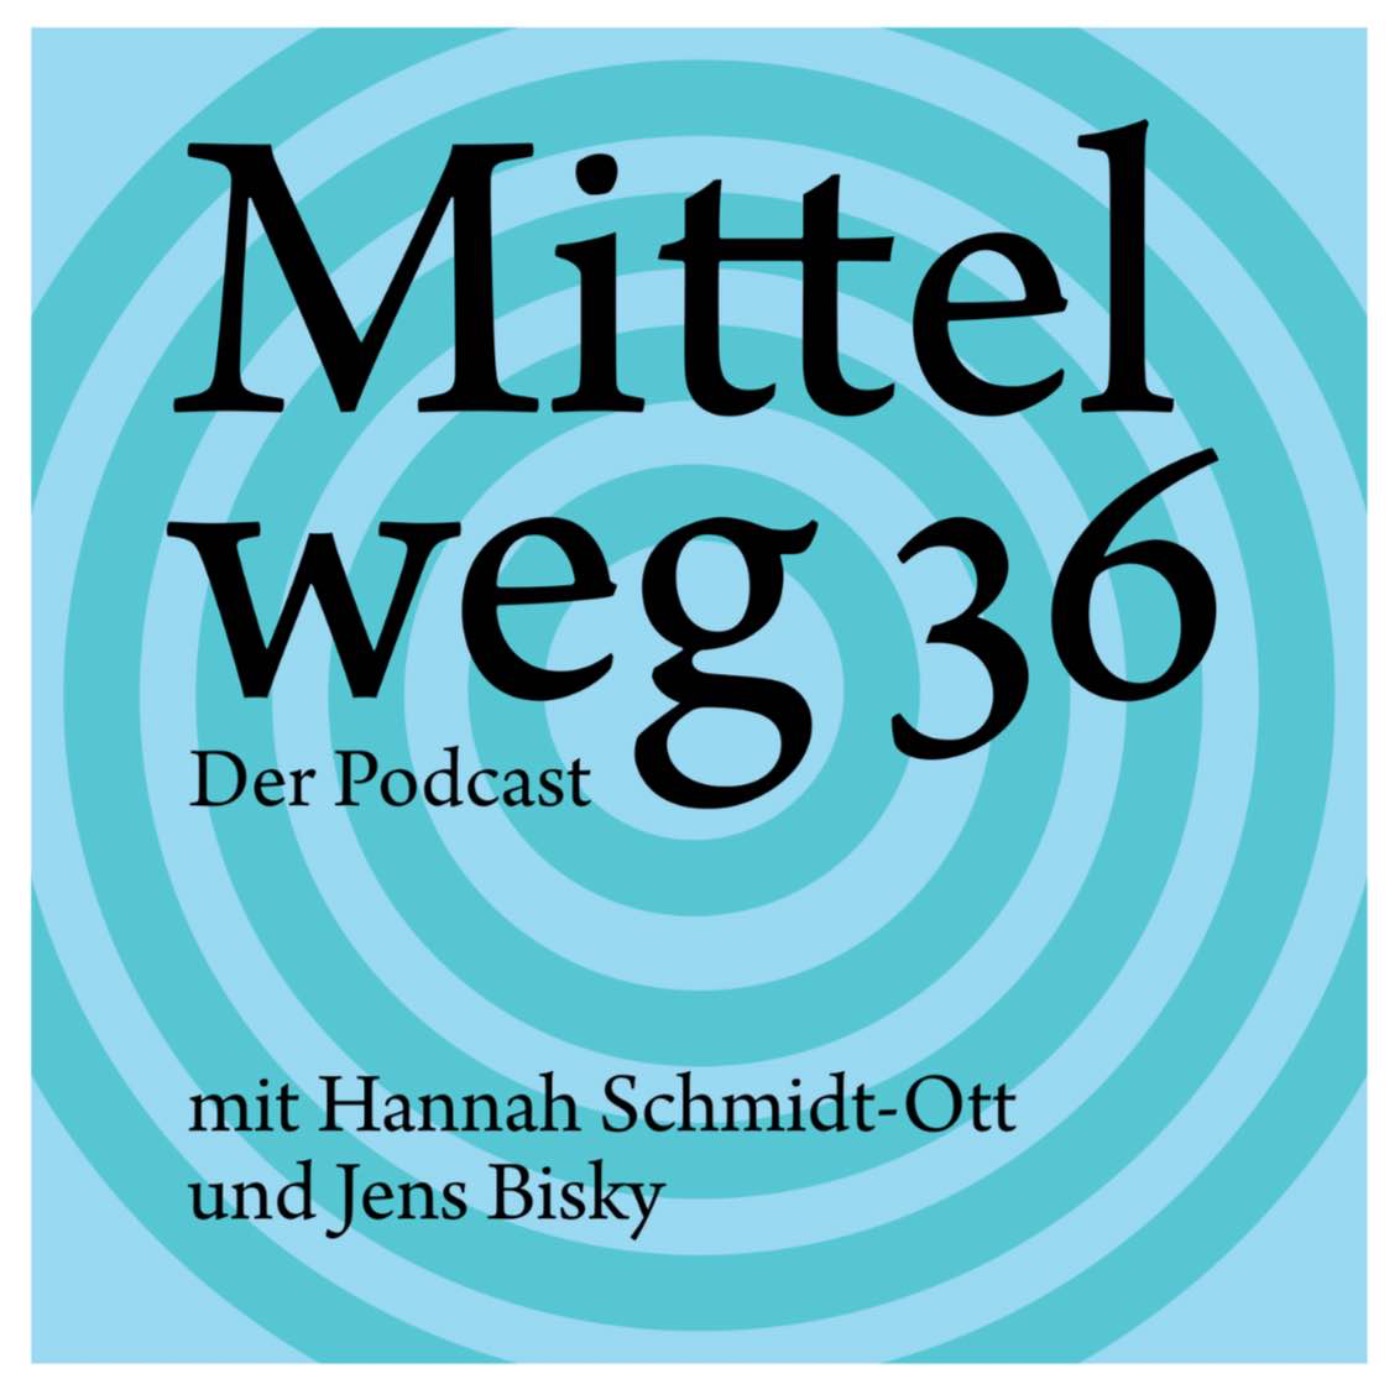 Mittelweg 36 podcast